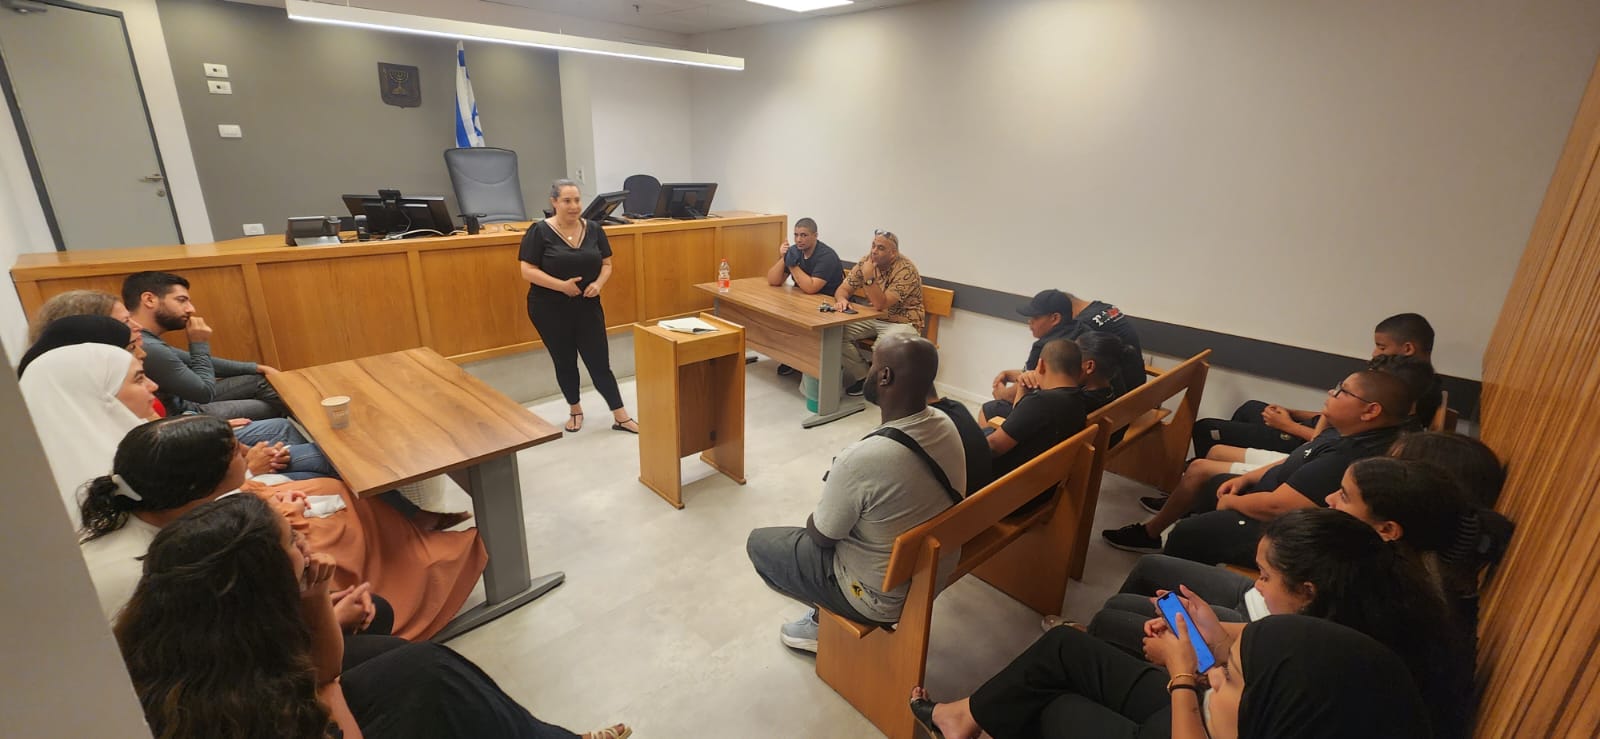 بالصور: جولة تعليمية لشبيبة مركز العجمي في محكمة شوكن